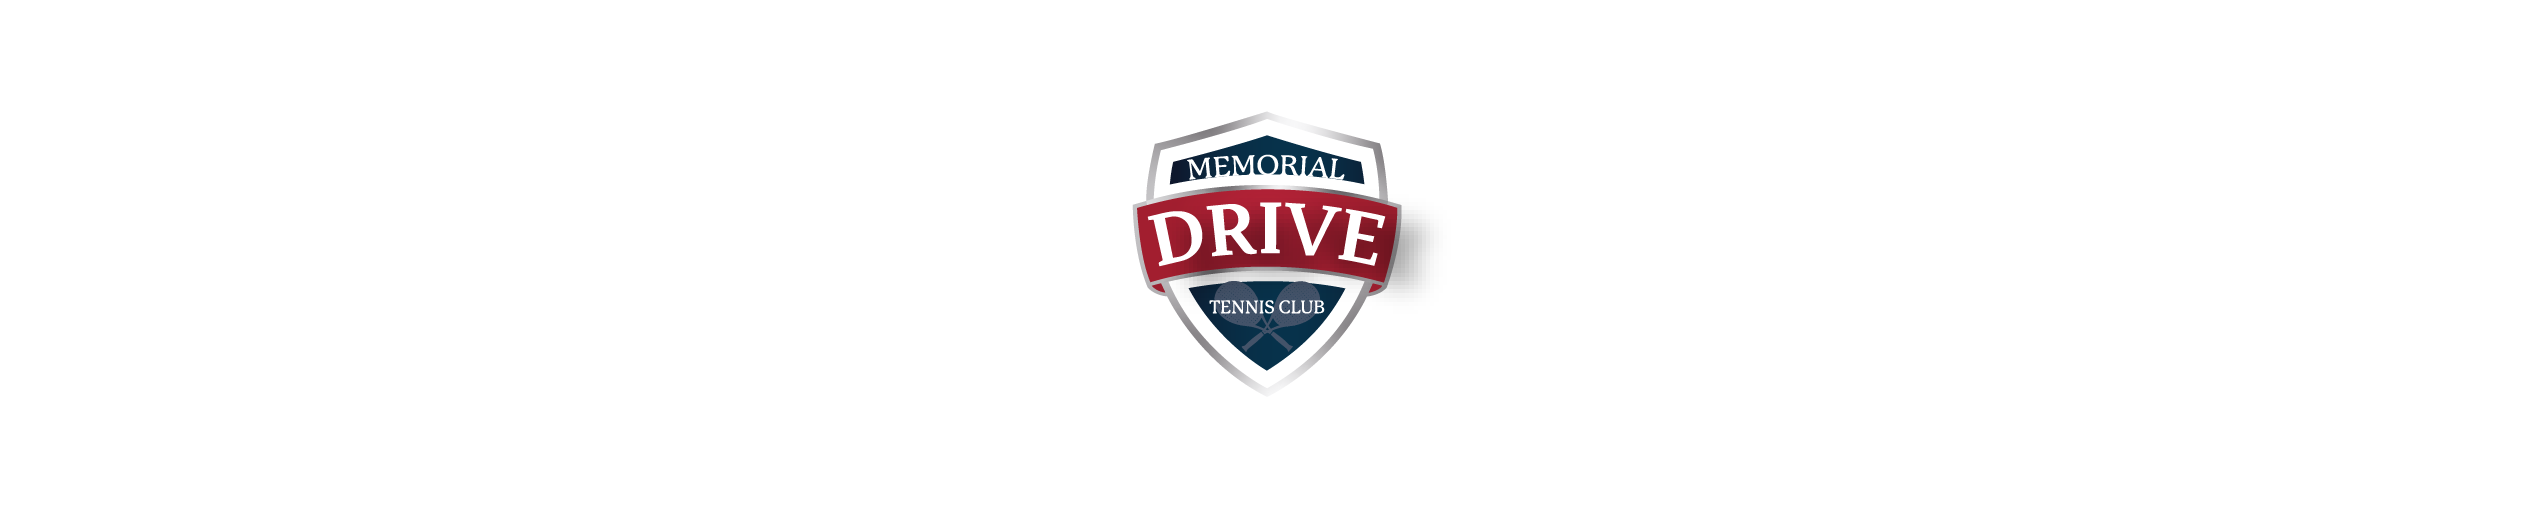 MEMORIAL DRIVE TENNIS CLUB